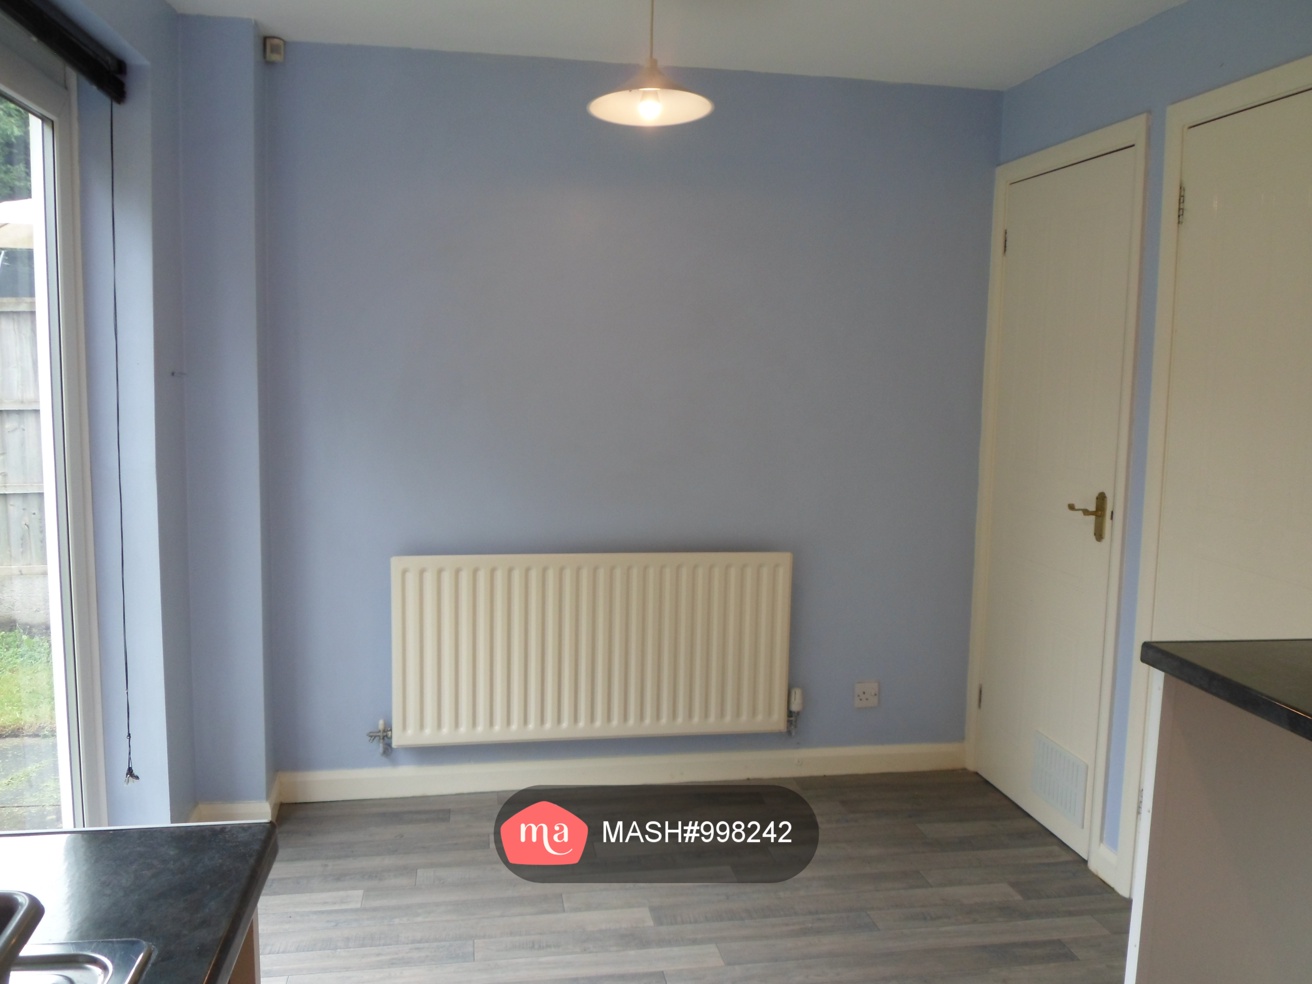 3 Bedroom Detached to rent in Nottingham - Mashroom